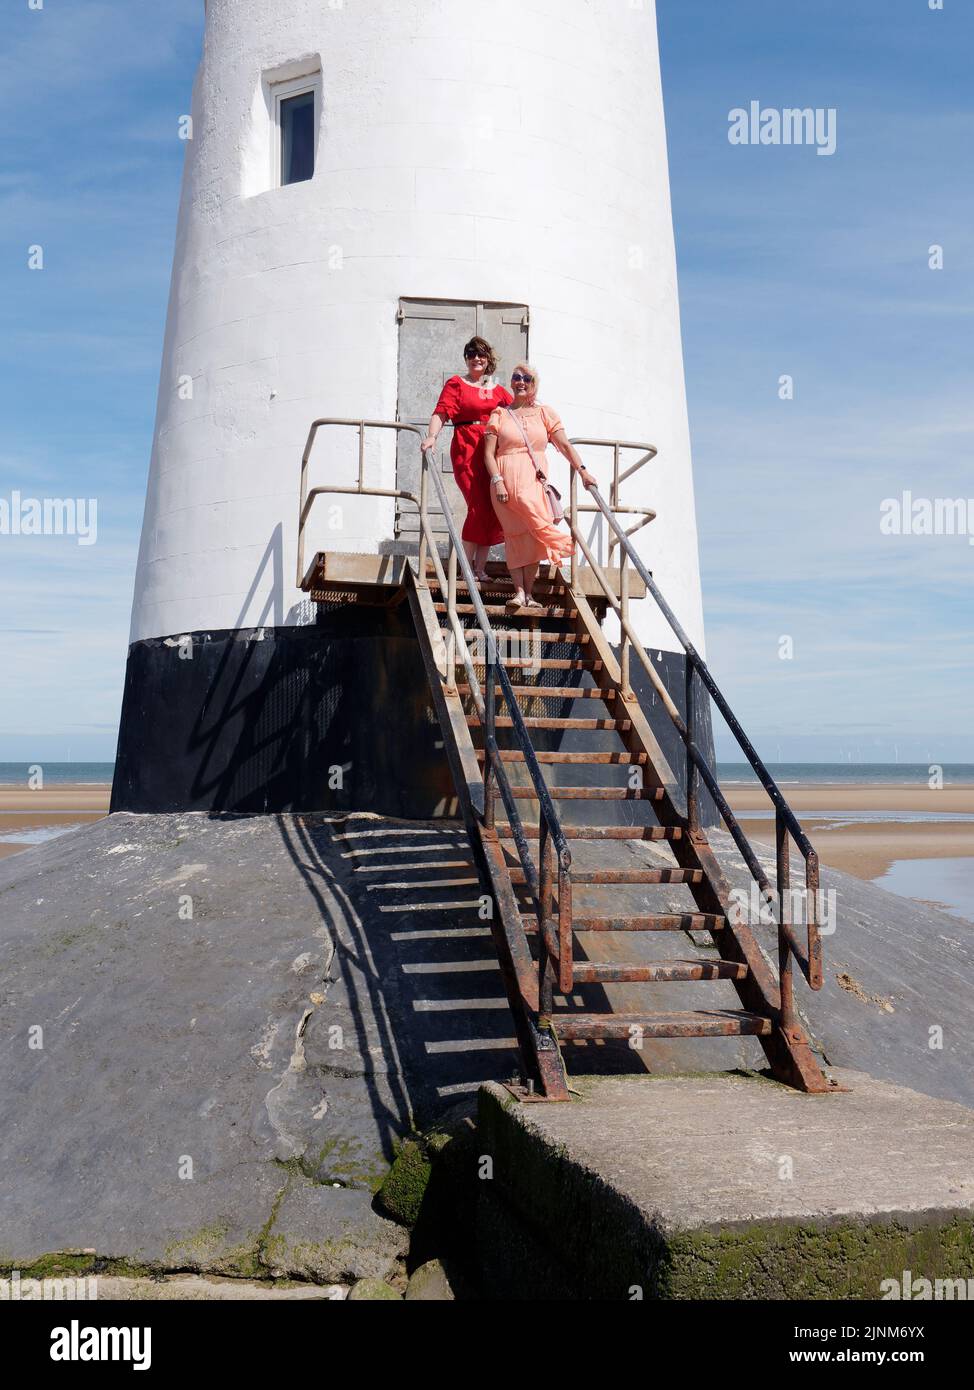 Les femmes habillées avec élégance au phare de point of Ayr alias Talacre Lighthouse, un bâtiment classé Grade II situé sur la plage. Pays de Galles. Banque D'Images